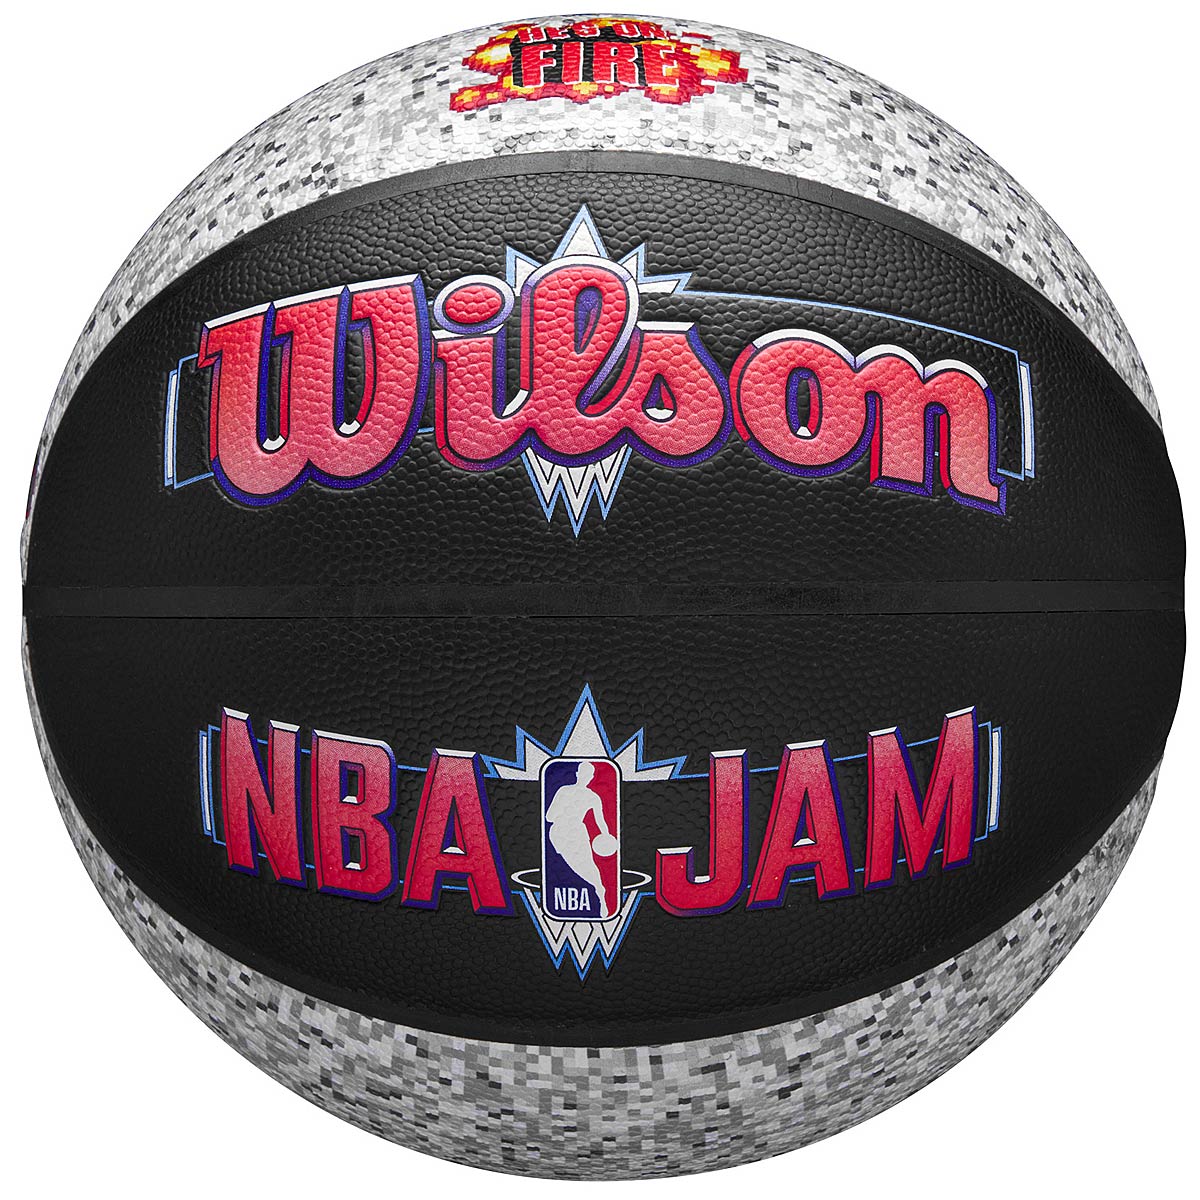 Image of Wilson NBA Jam Indoor Outdoor Basketball, Black / Grey